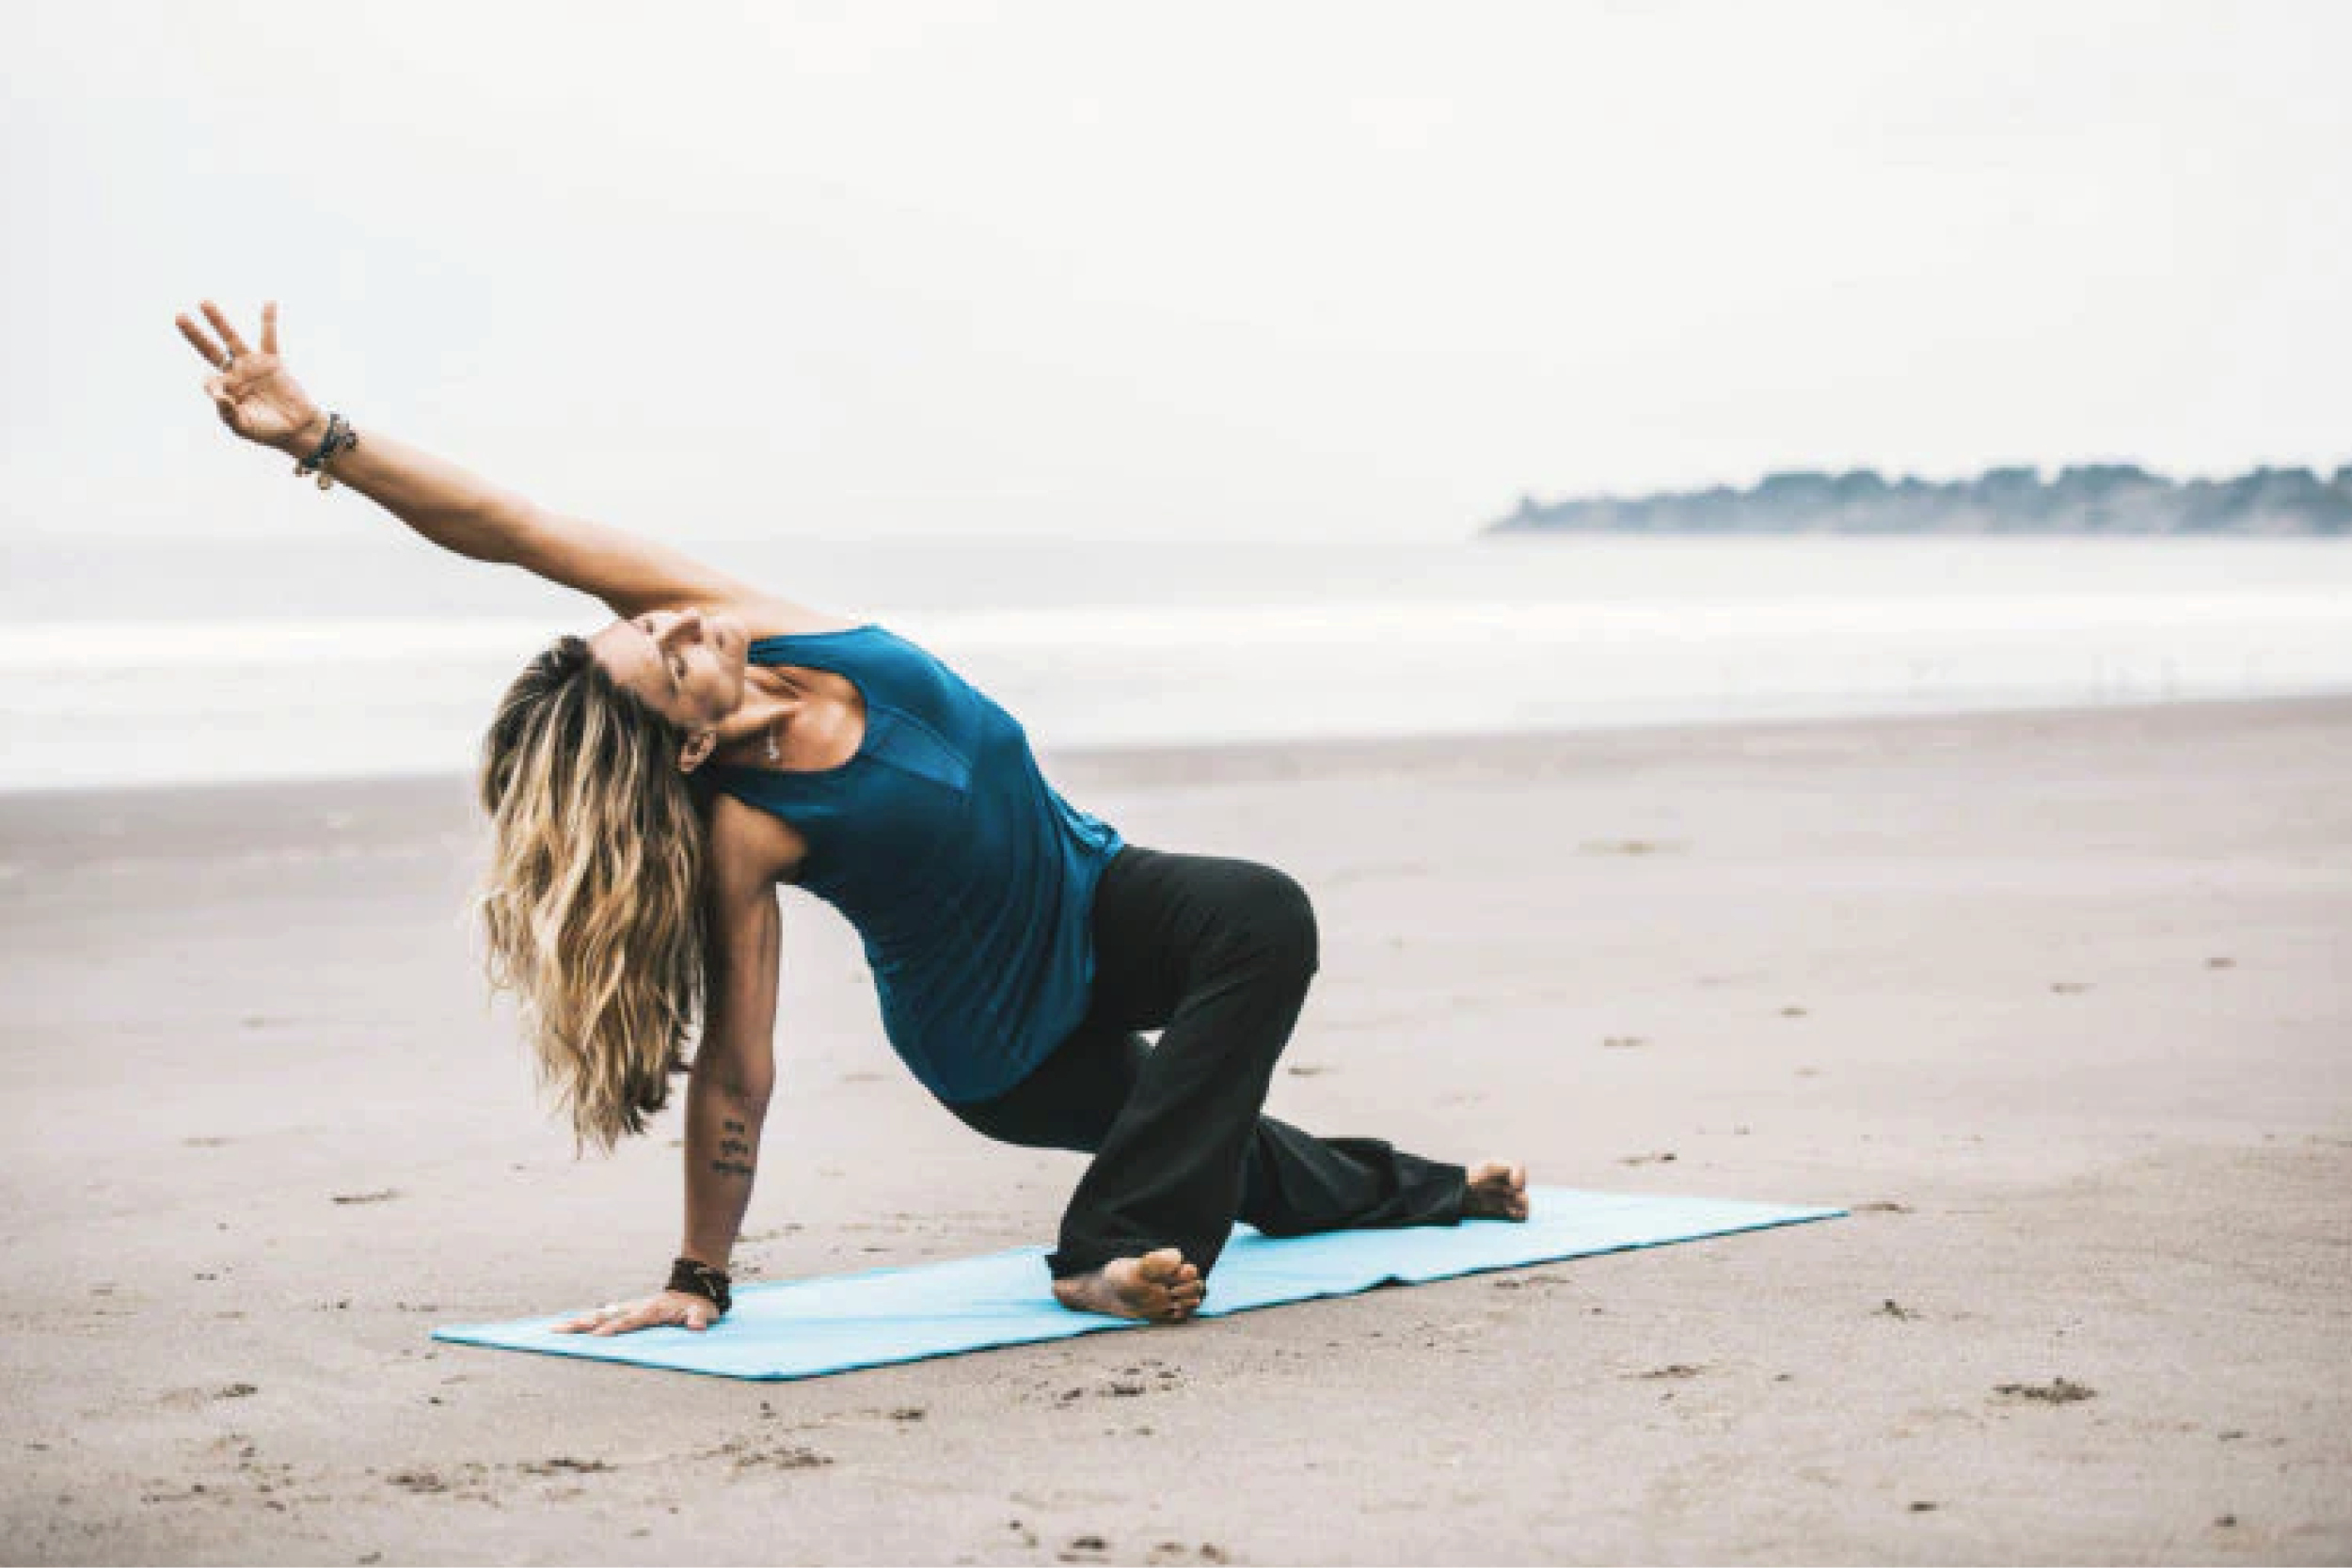 The Best 16 Heart Opening Yoga Poses • Yoga Basics